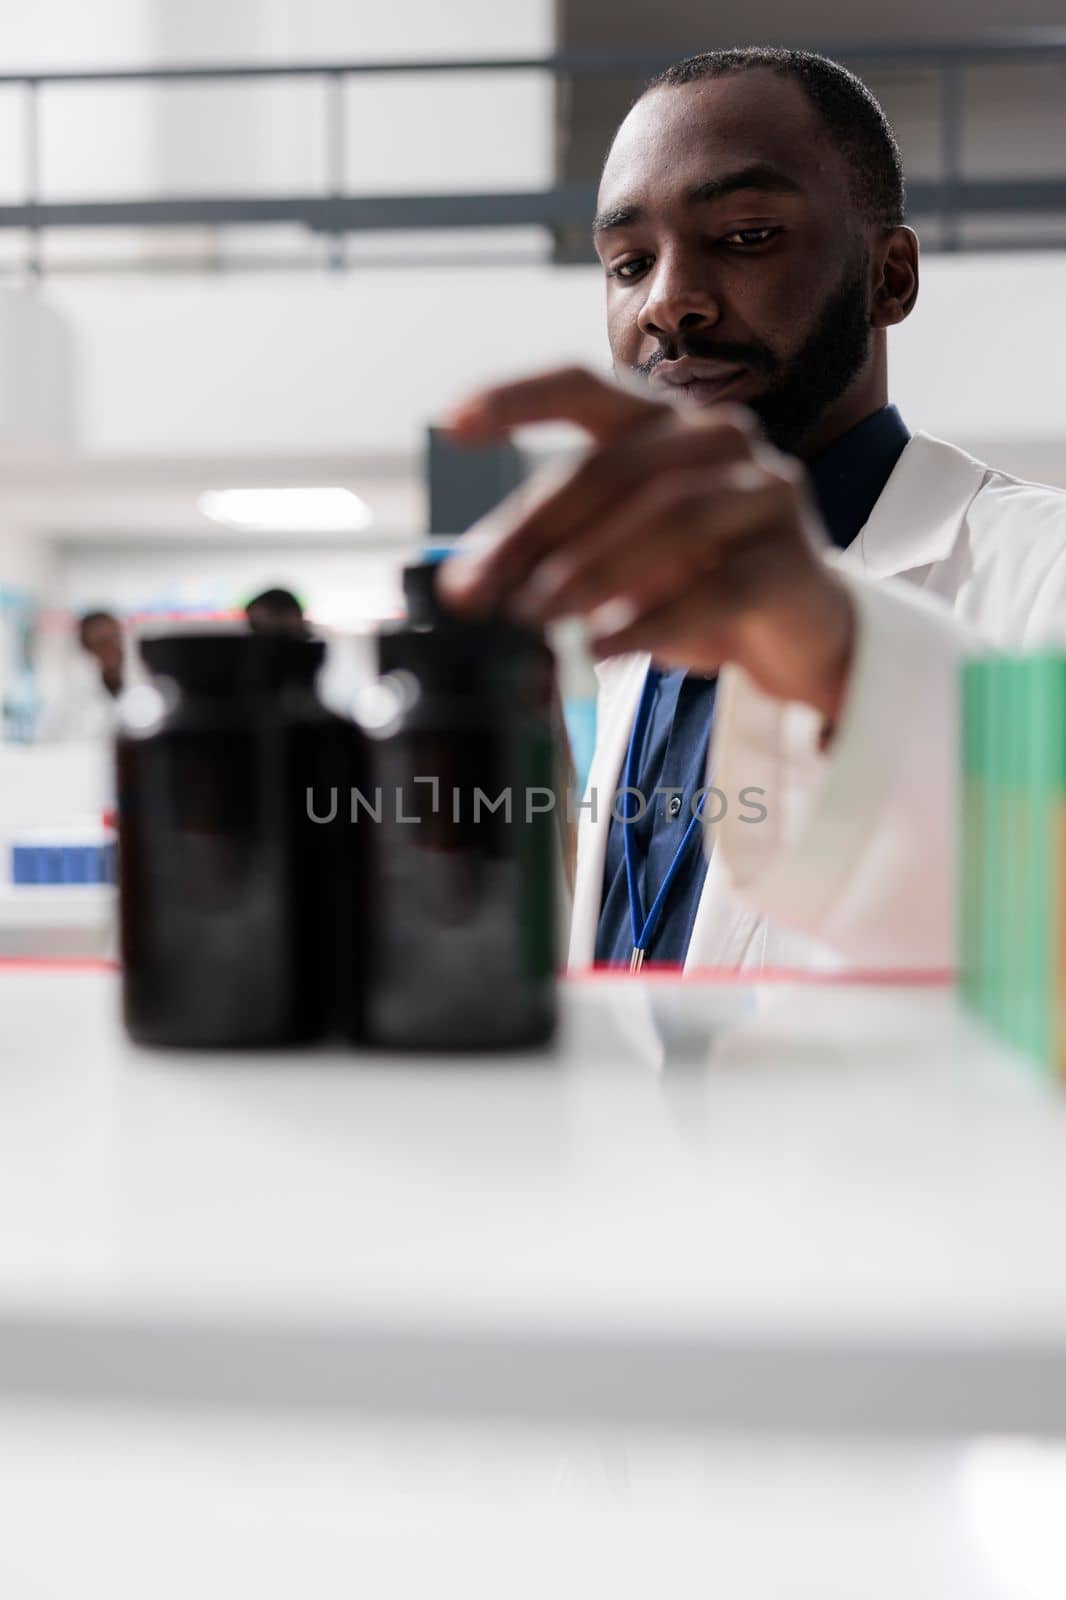 African american pharmacist taking medication bottles from drugstore shelf by DCStudio